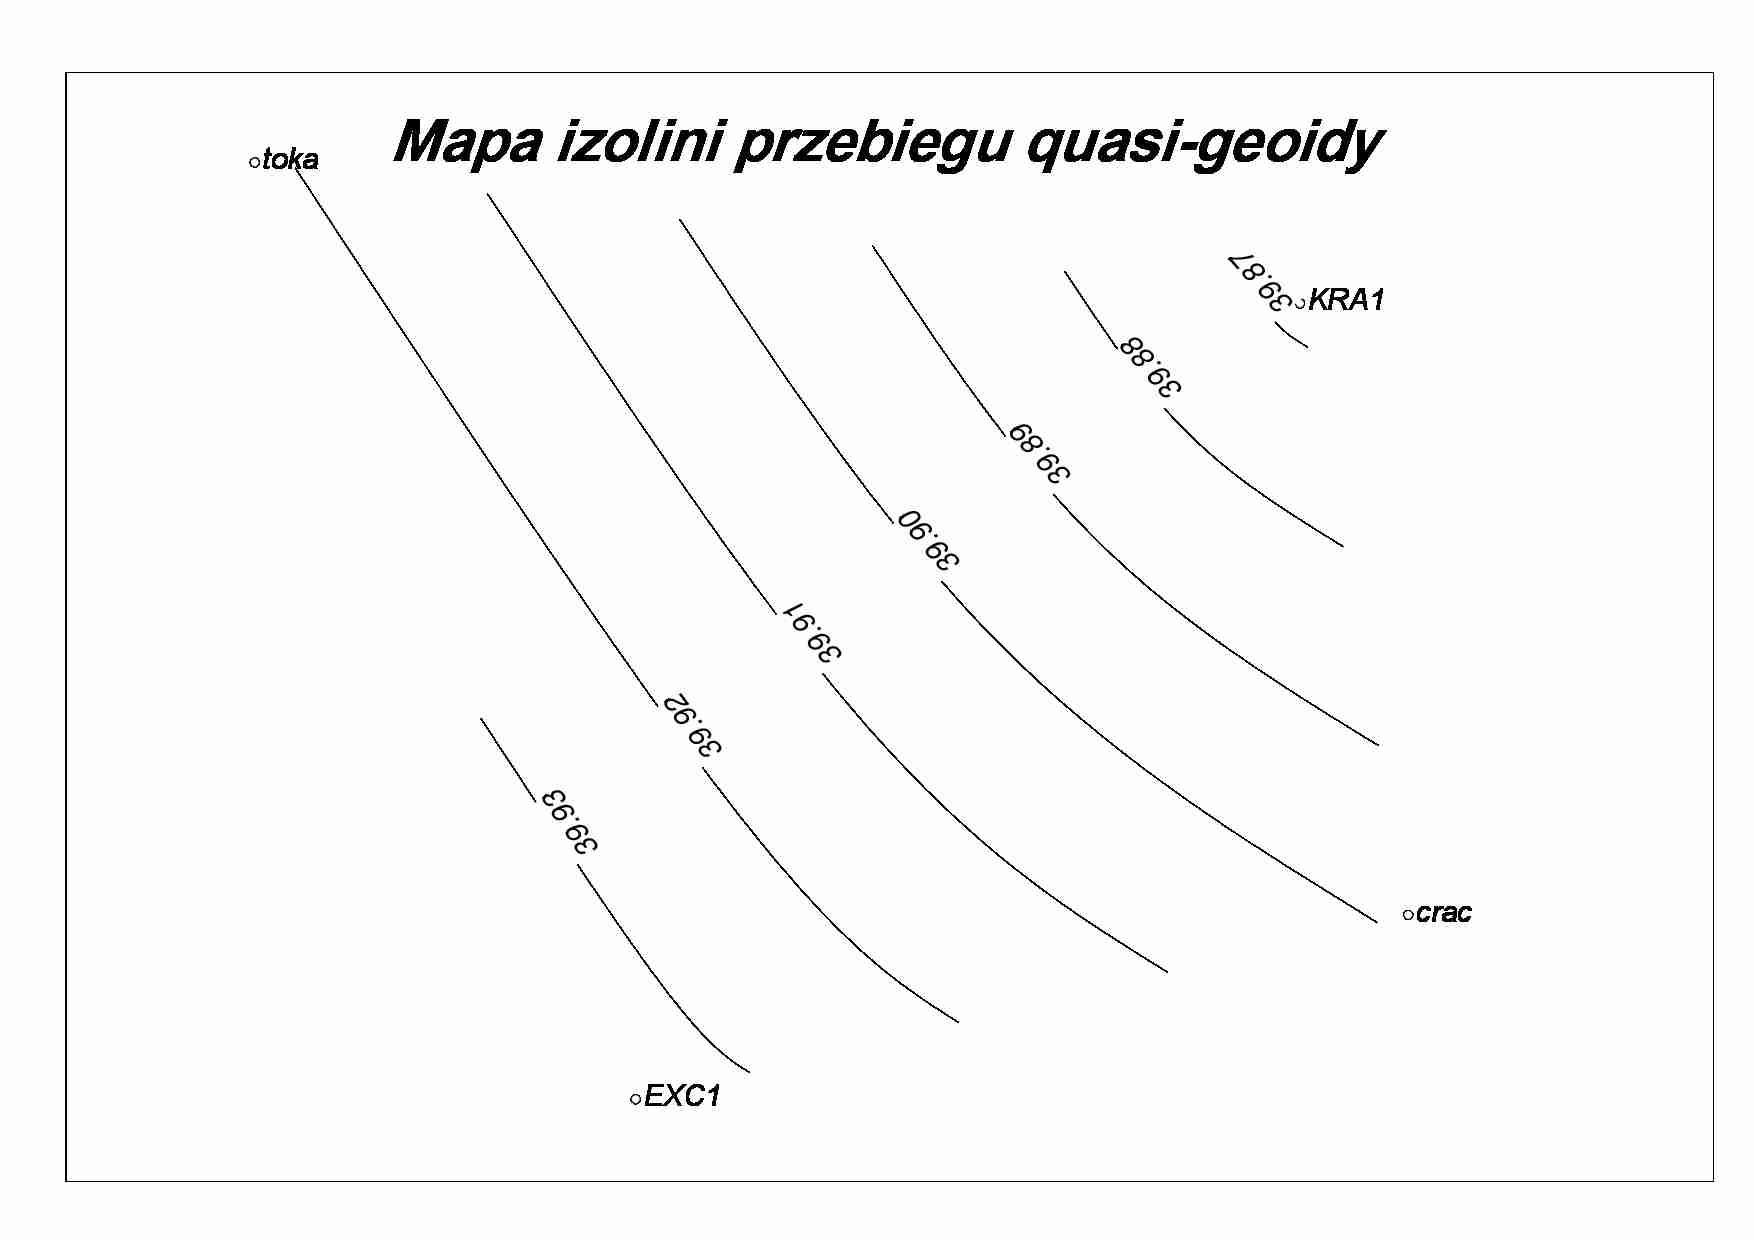 Mapa izolini przebiegu quasi-geoidy - strona 1